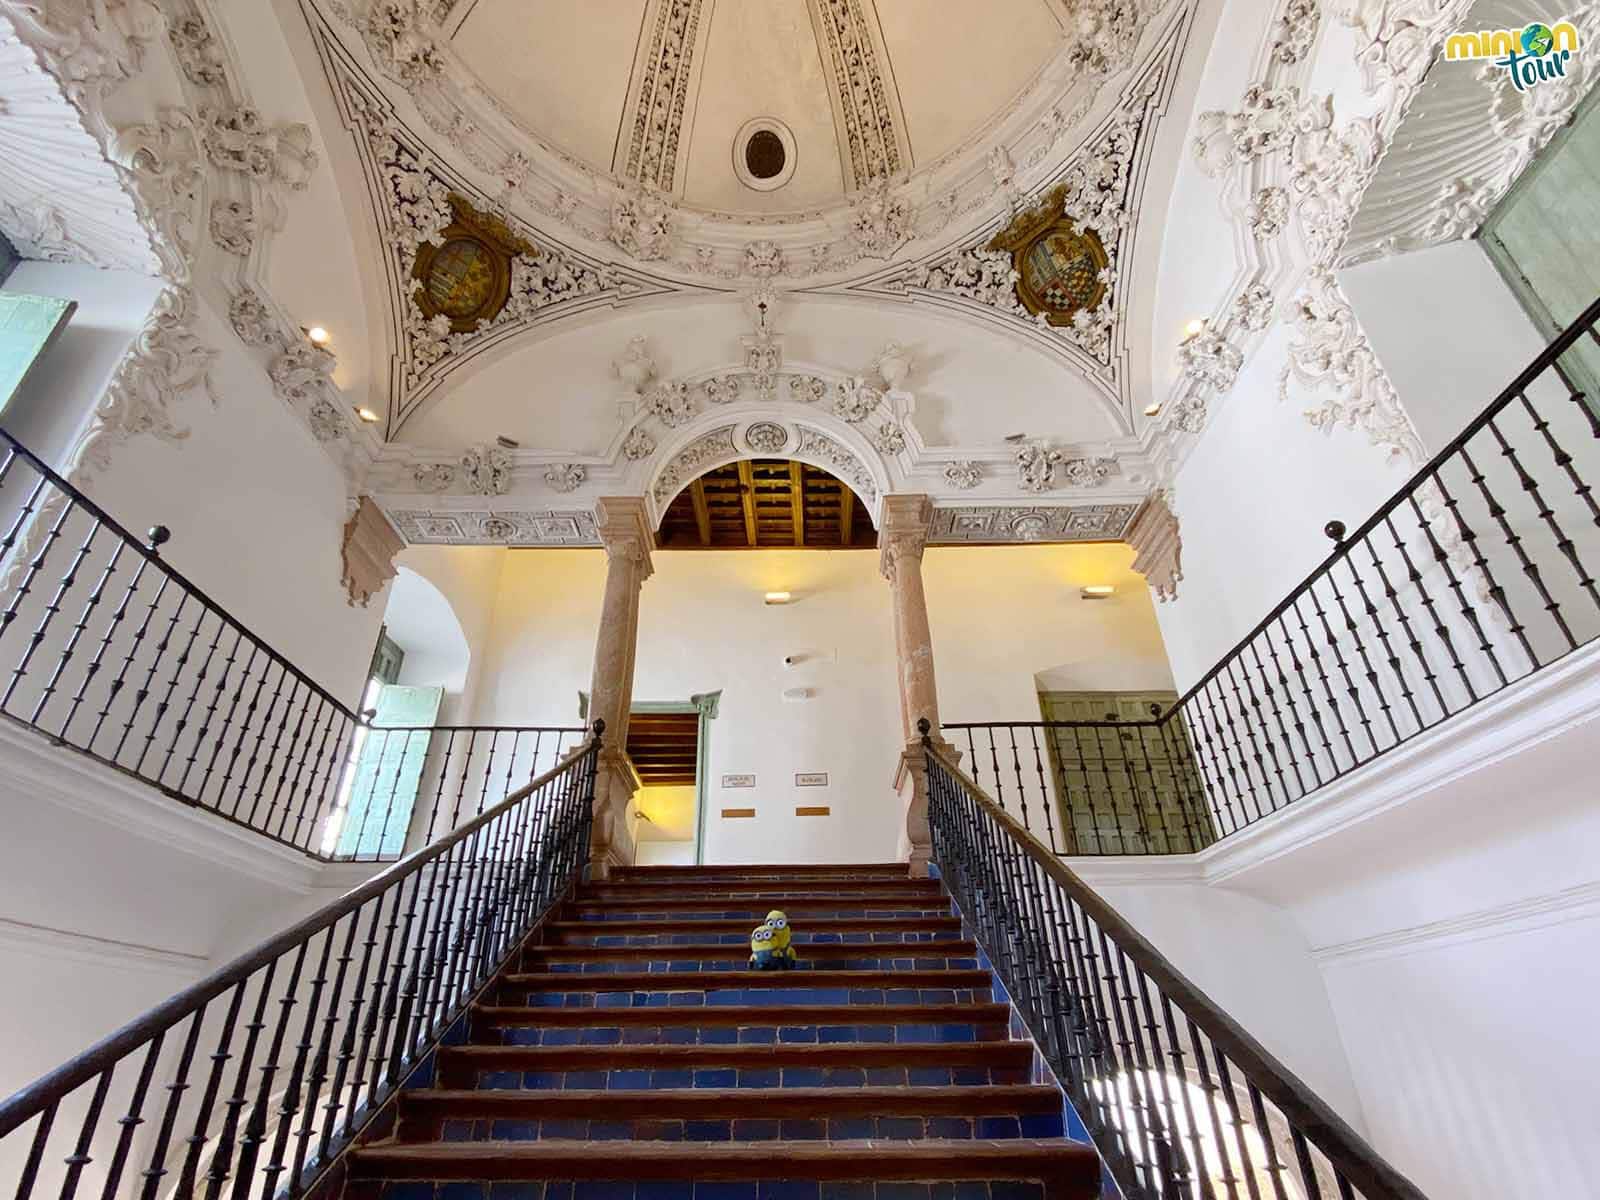 La escalera imperial del Palacio de los marqueses de Peñaflor es una pasada